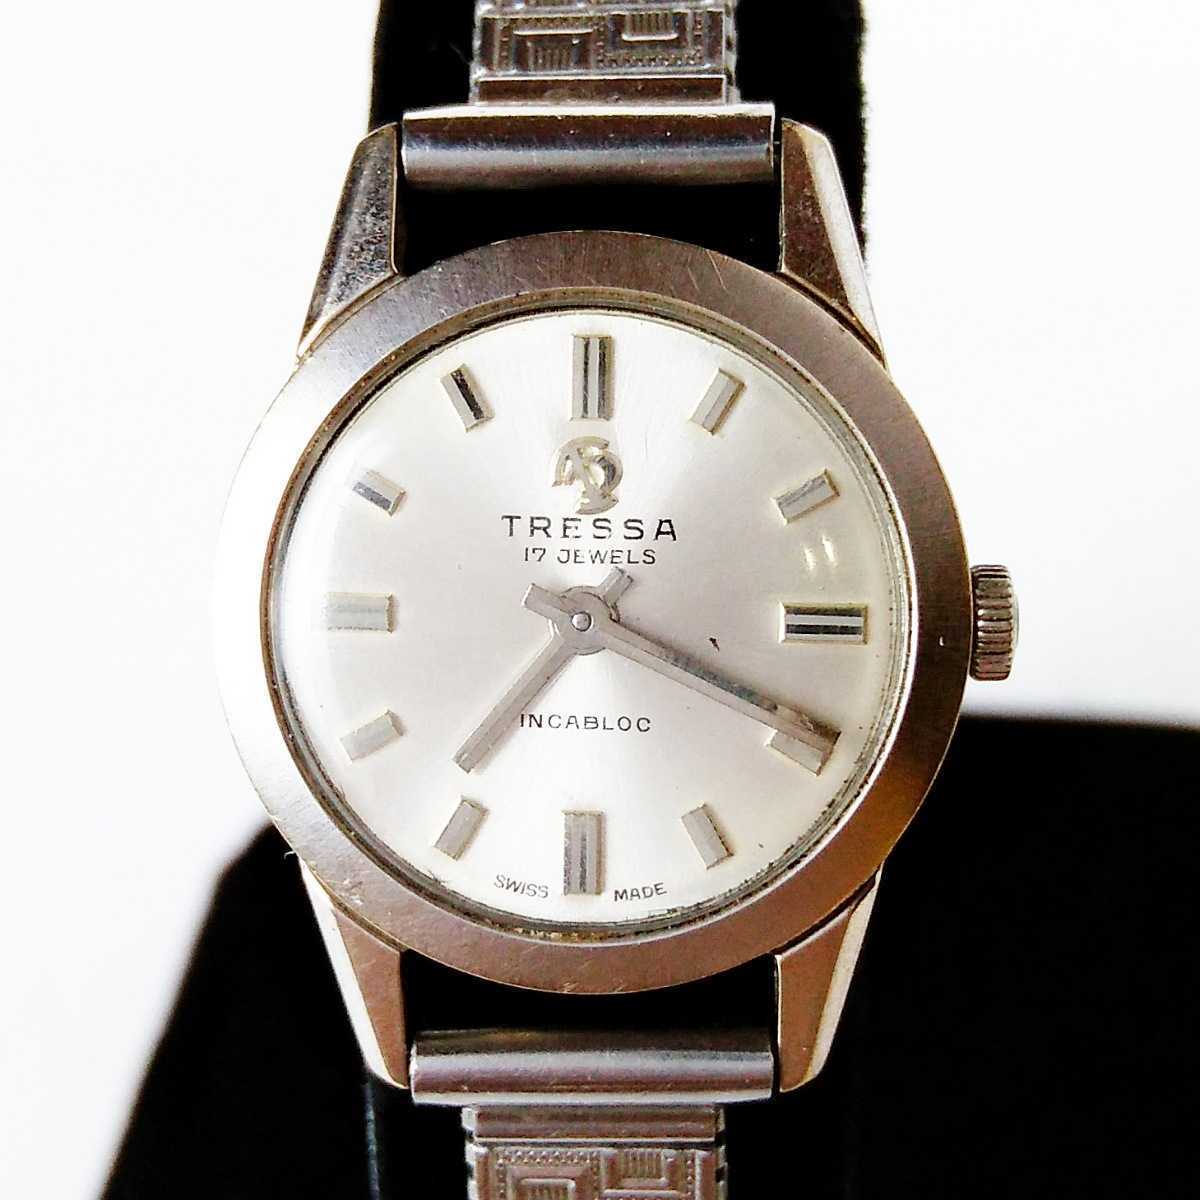  рабочий товар TRESSAtoresaSWISS MADE Швейцария производства наручные часы механический завод тип женские наручные часы работа товар o440